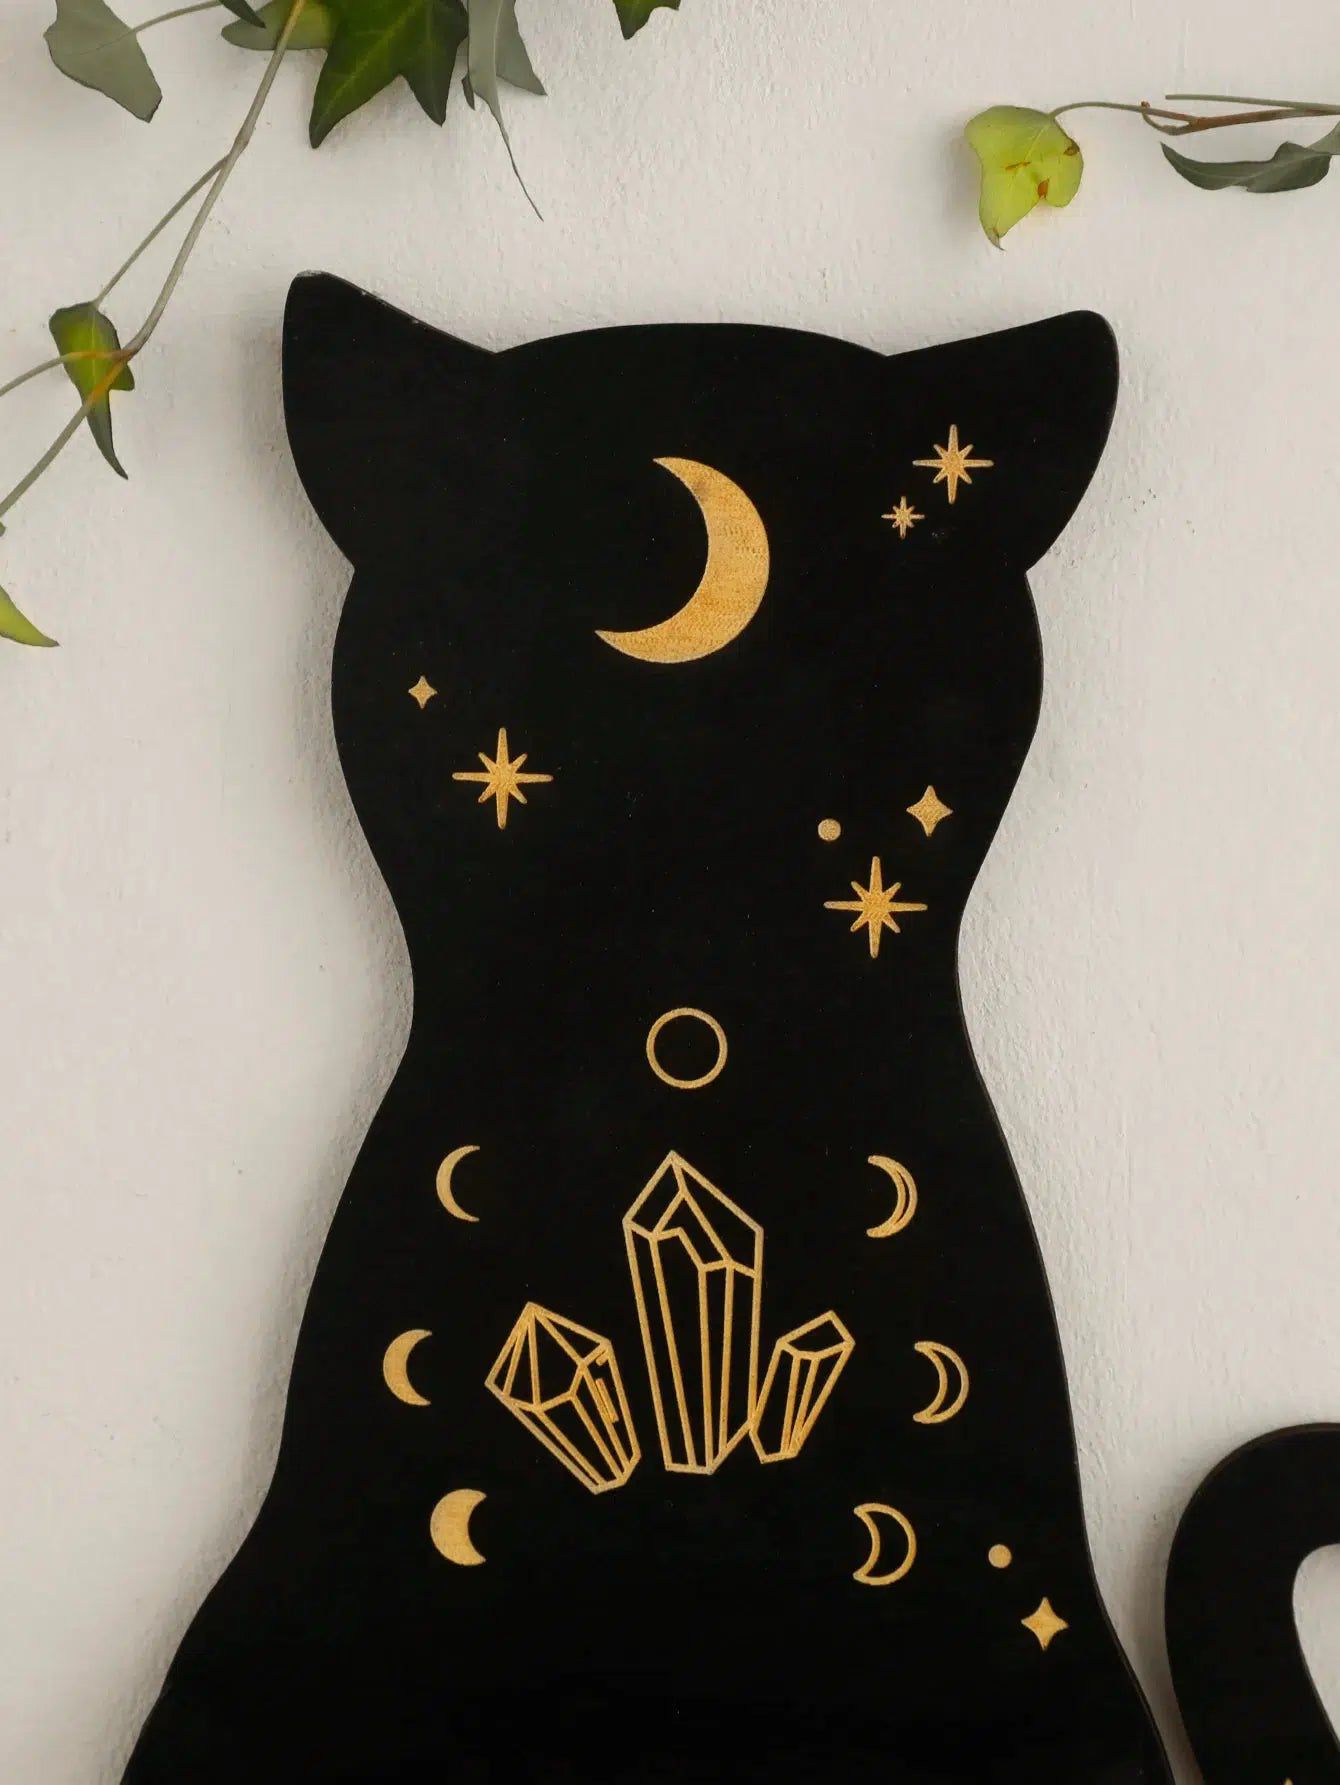 Black Cat Wooden Shelf Moon Phase Floating Shelf Chakra Crystal Holder-MoonChildWorld